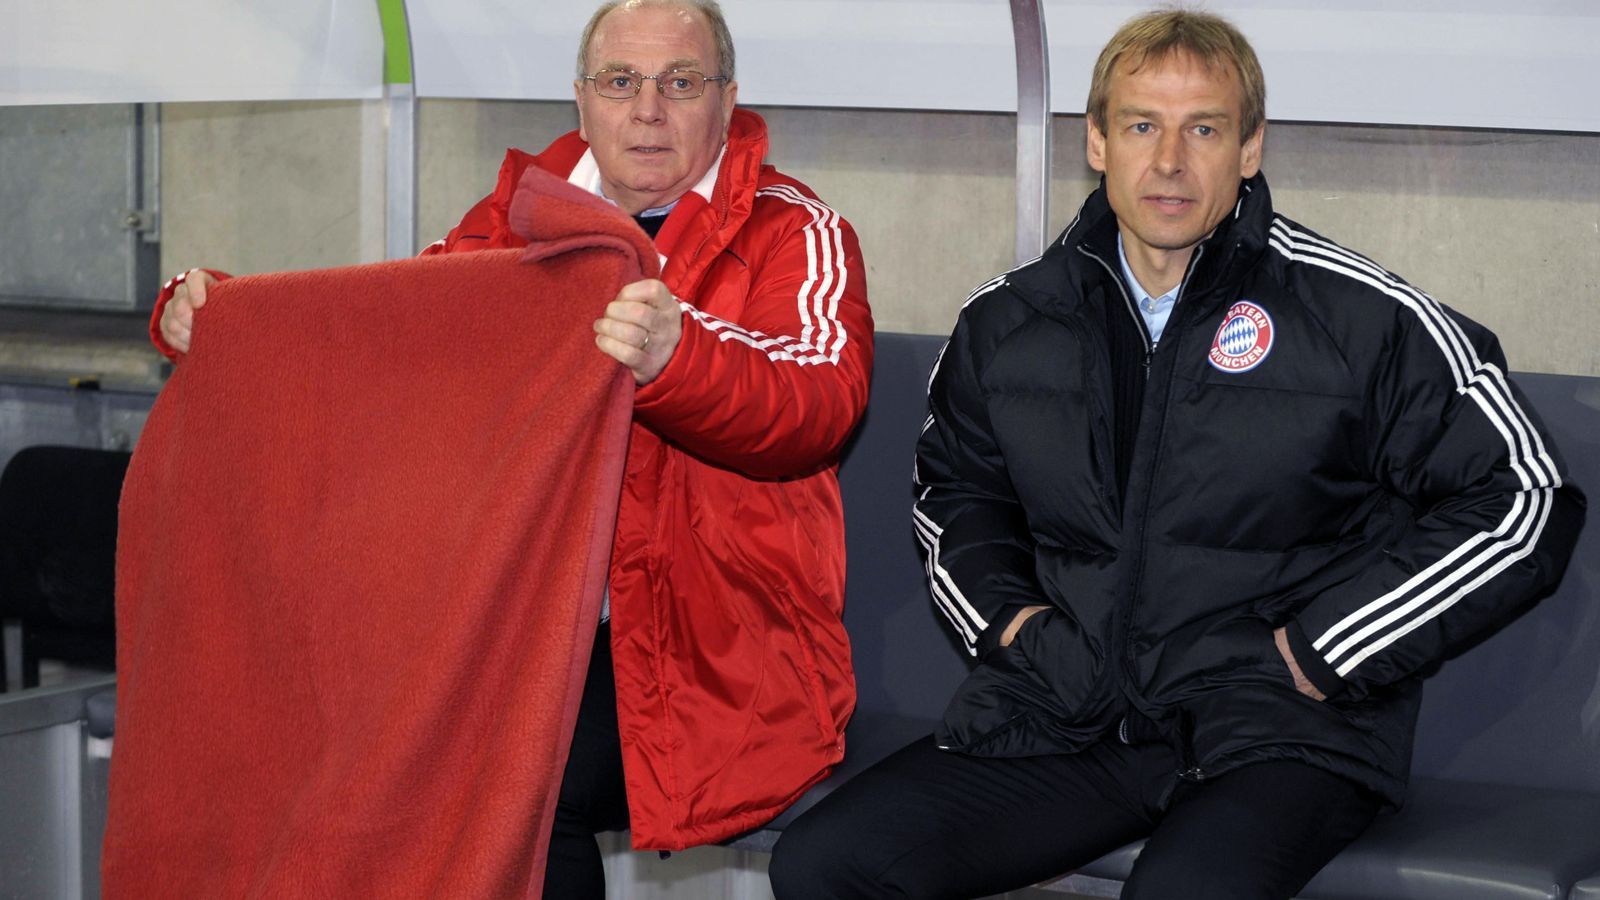 
                <strong>Jürgen Klinsmann (FC Bayern München)</strong><br>
                Als Spieler geliebt, als Trainer geschasst. Dies widerfuhr Jürgen Klinsmann (re.), als er im Sommer 2008 als Trainer zu seinem Ex-Klub FC Bayern zurückkehrte. Der Ex-Stürmer, der damals zuvor nur Trainererfahrung als deutscher Bundestrainer hatte, sollte die Bayern zu Titeln führen, wie er es einst als Aktiver mit seinen Toren gemacht hatte. Statt für eine Erfolgsära, steht die Zeit von Klinsmann als Bayern-Trainer heute aber für ein kapitales Missverständnis. "Klinsi" konnte sich nicht mal eine Saison lang auf der Bank des deutschen Rekordmeisters halten. Bereits Ende April 2009 wurde er nach einer 0:1-Heimpleite gegen Schalke gefeuert. Vor allem der damalige Manager Uli Hoeneß (li.) kartete nach Klinsmanns' Aus mehr als nur einmal gegen den Ex-Trainer nach. Gut zehn Jahre später versuchte sich Klinsmann noch einmal als Bundesliga-Trainer, scheiterte aber auch bei Hertha BSC innerhalb von kurzer Zeit.
              